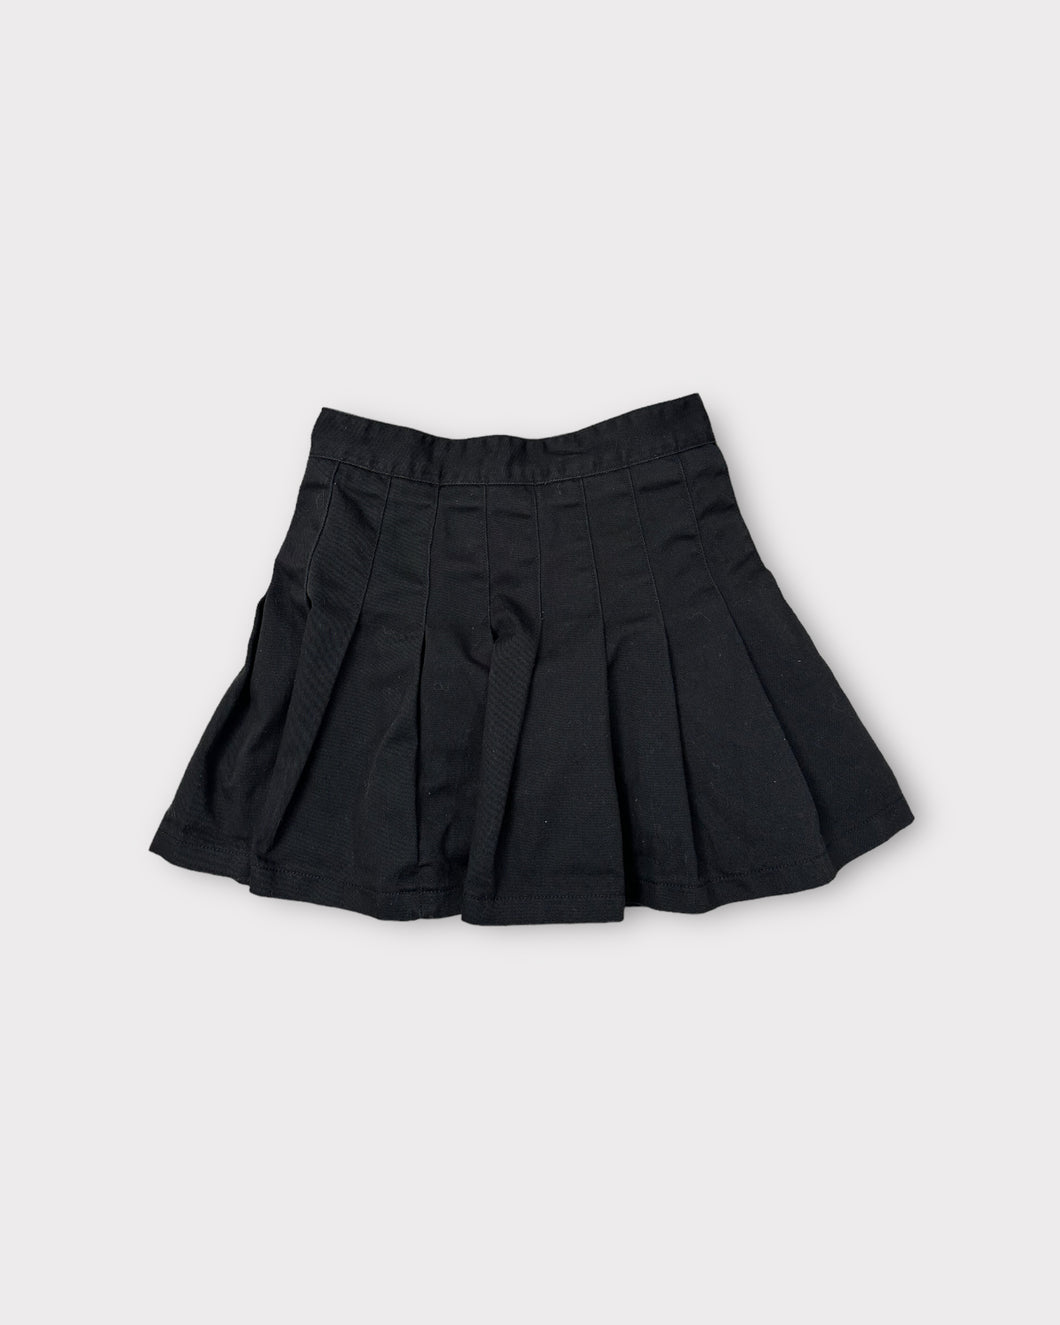 John Galt Dana Black Pleated Tennis Skirt (S)